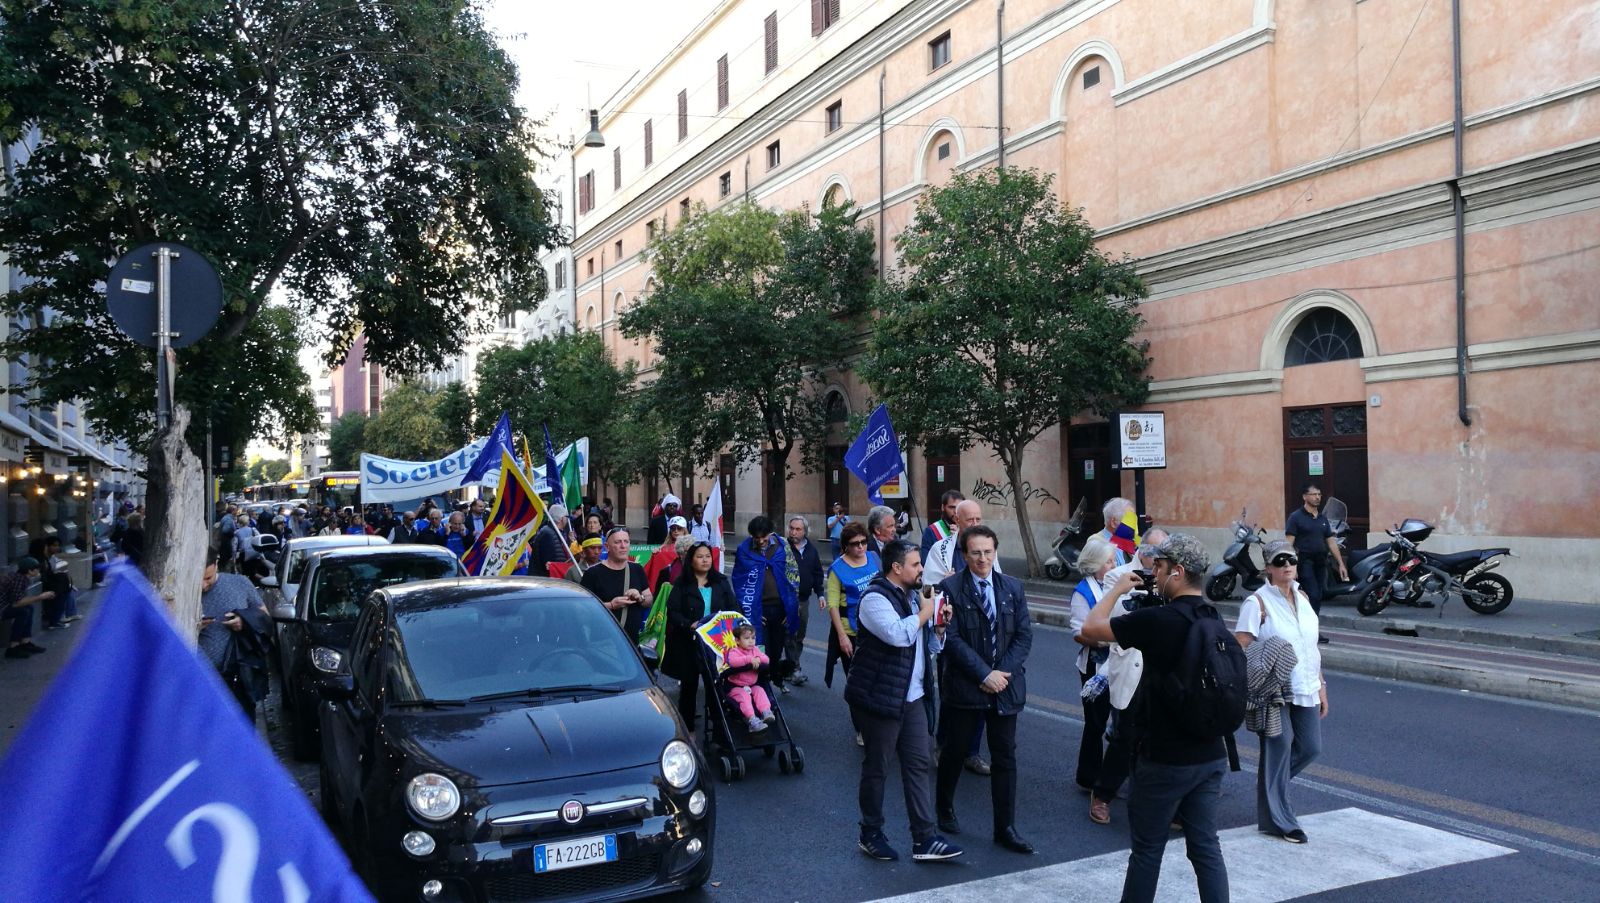 Roma, Parigi, Campagnano, X Marcia internazionale per la Libertà dei popoli e delle minoranze oppresse, 21 ottobre 2017